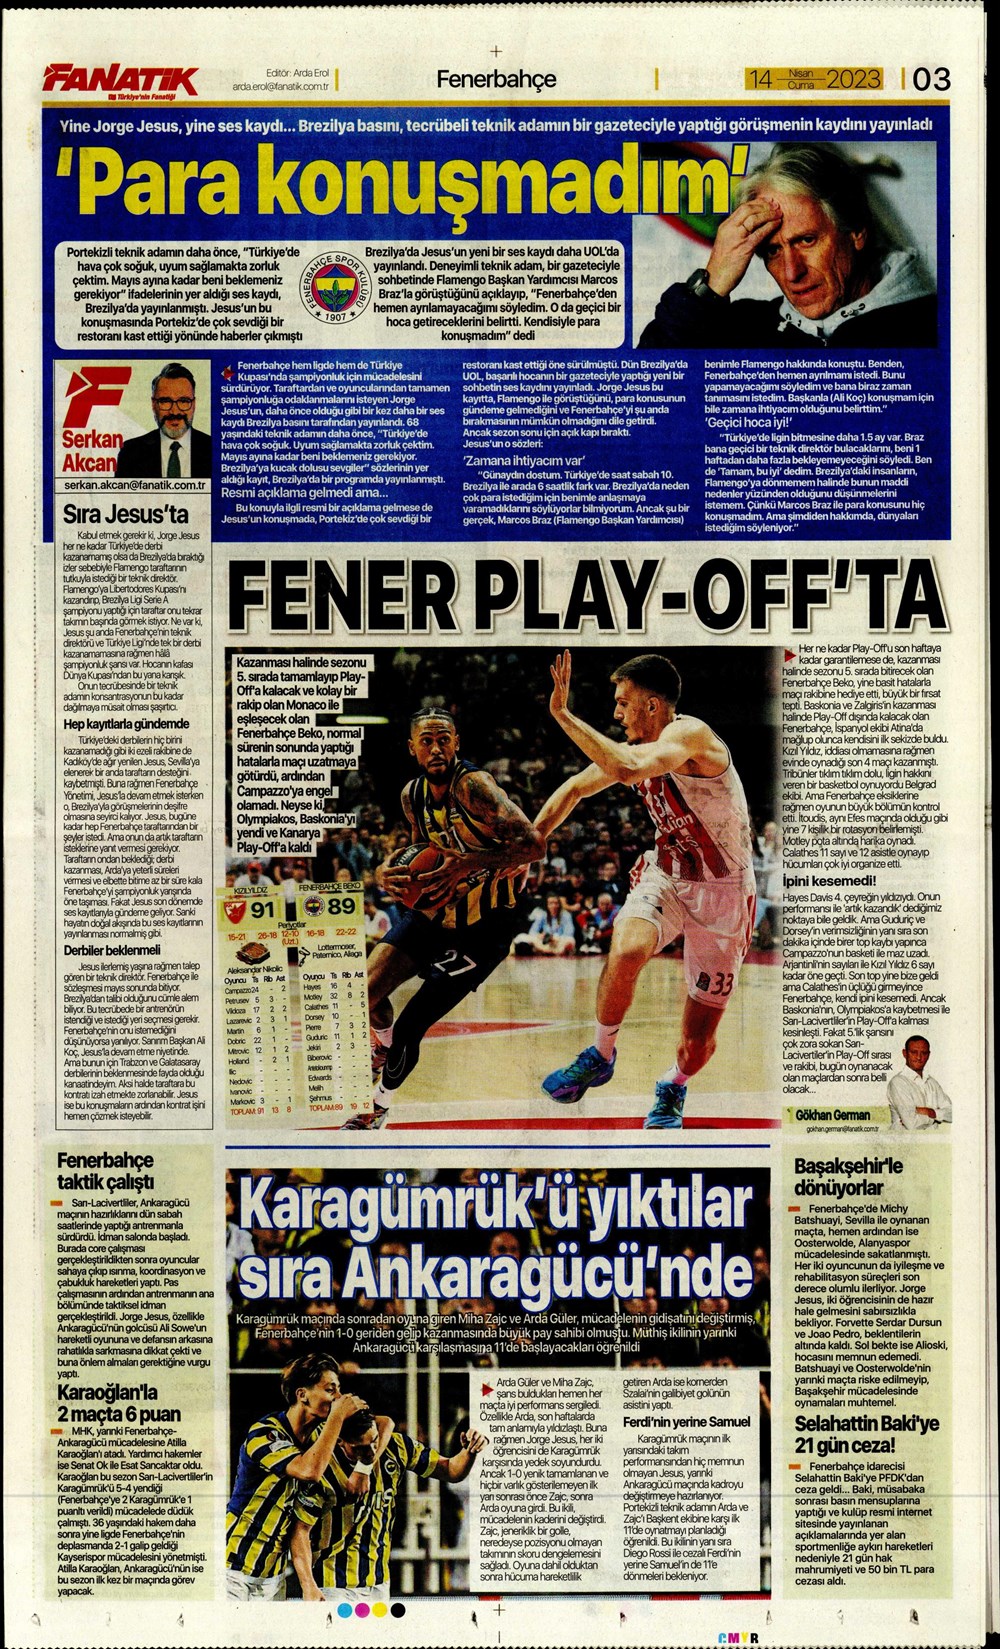 Beşiktaş ile 14. resmi maçımız - Gaziantep Doğuş Gazetesi